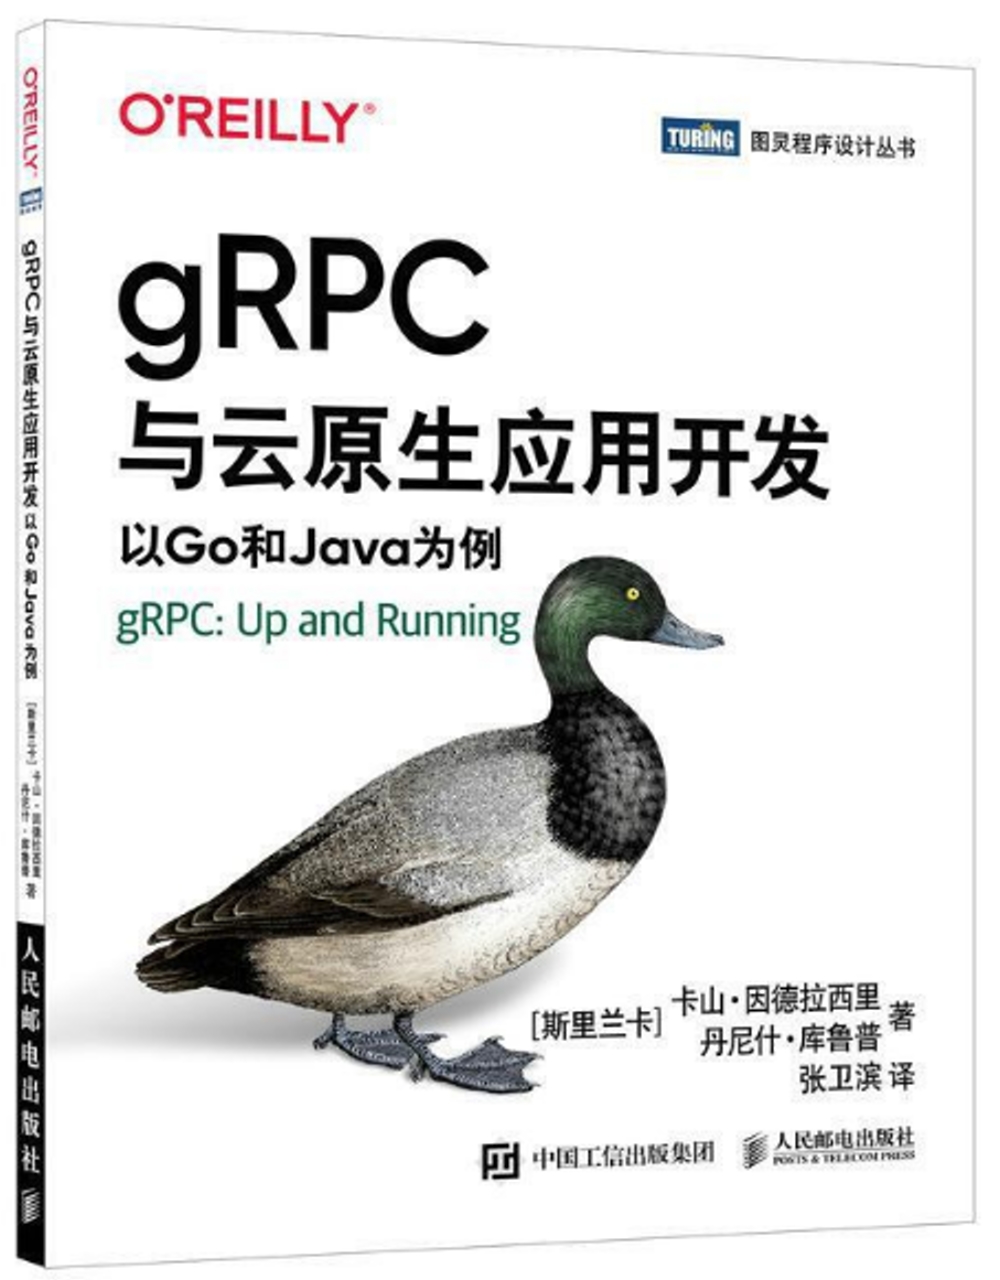 gRPC與雲原生應用開發：以Go和Java為例